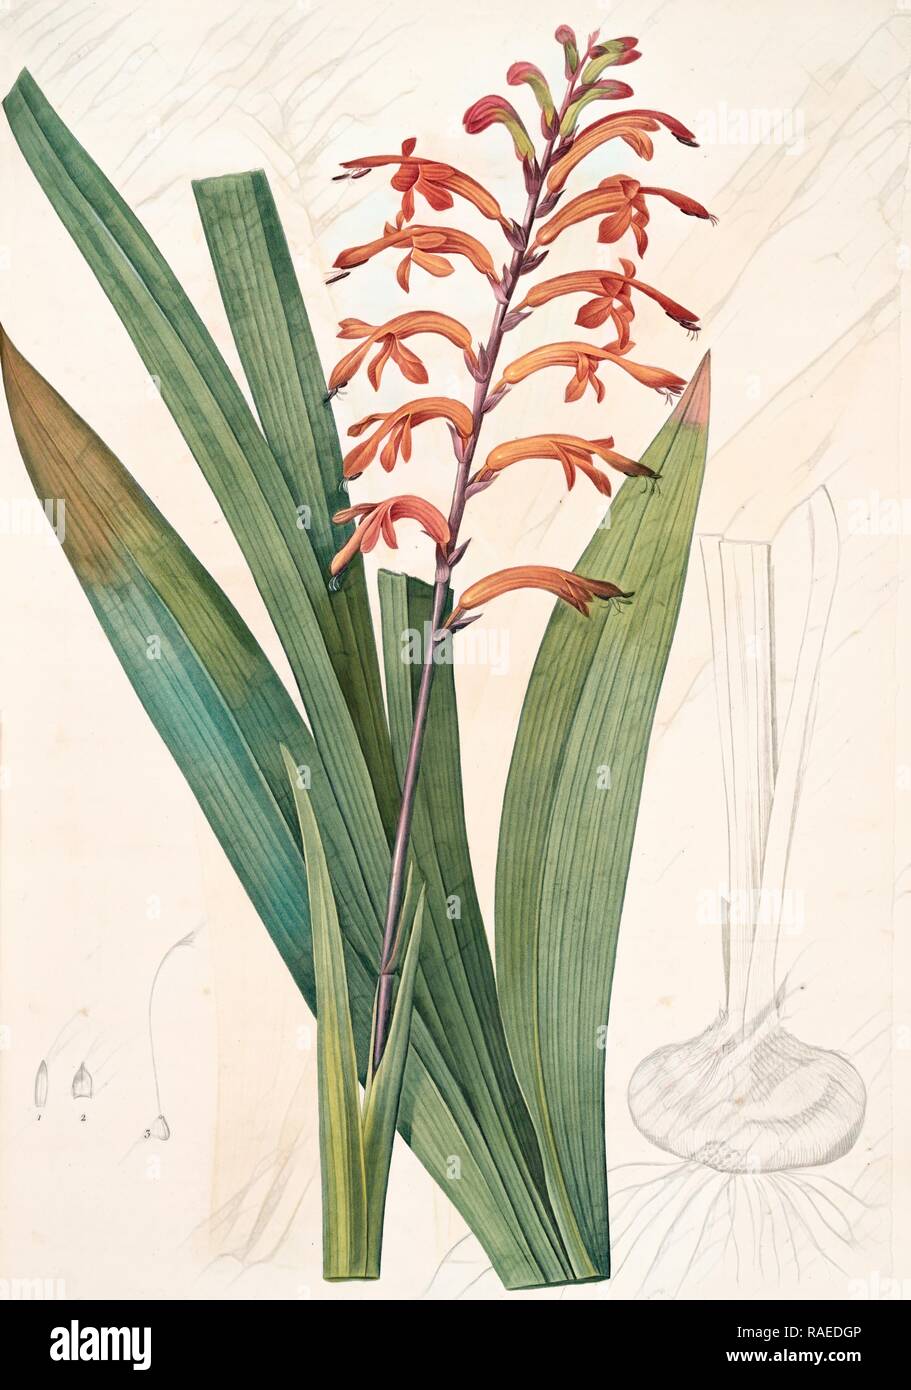 Antholyza praealta, Chasmanthe aethiopica, Antholyze élevée, Flag-leaved Antholyza, Redouté, Pierre Joseph, 1759-1840 reimagined Stock Photo